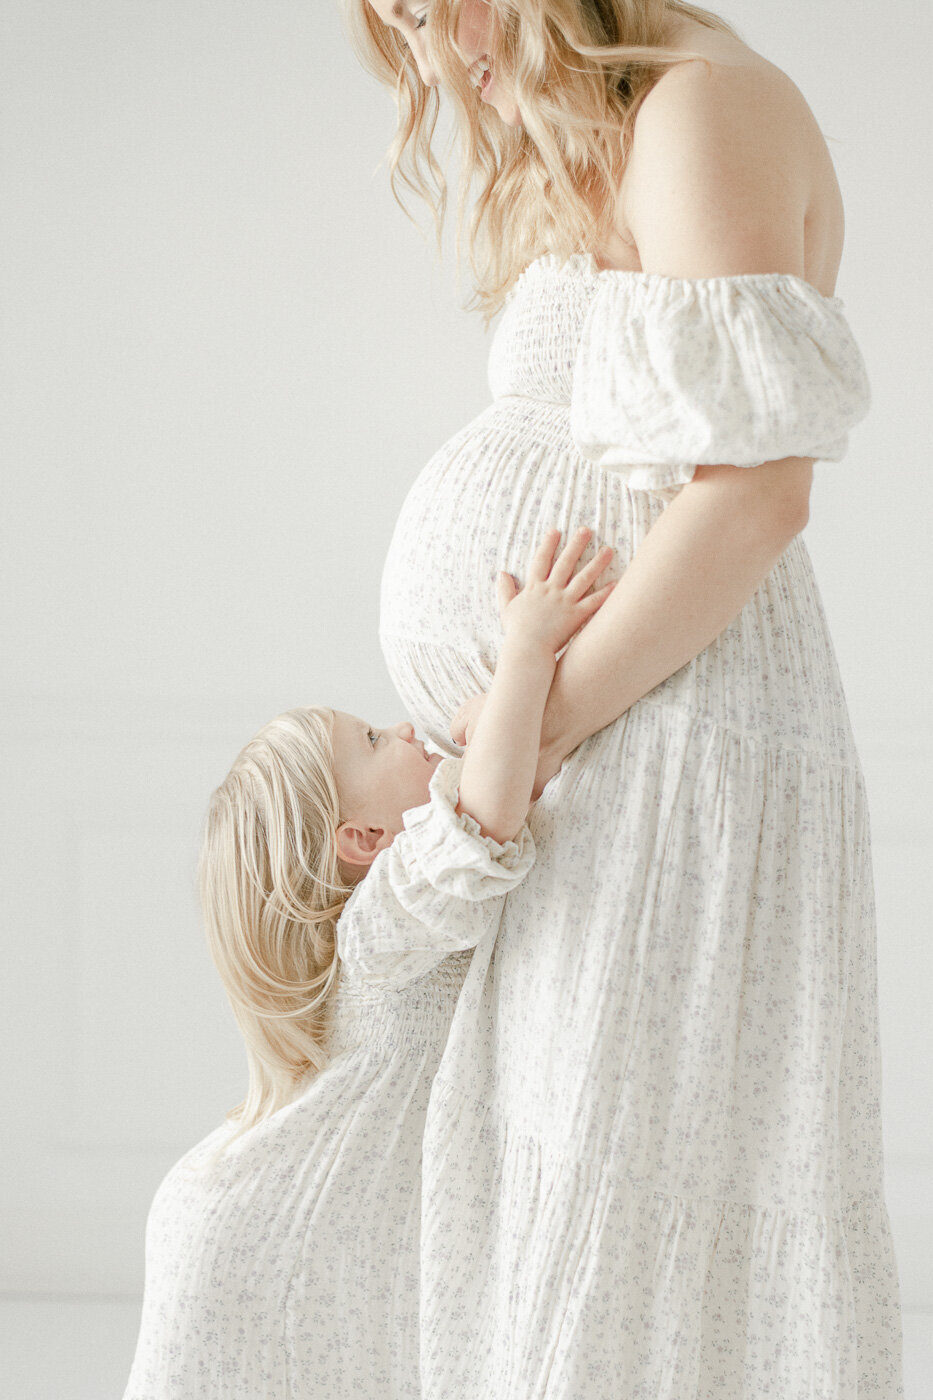 Toddler girl hugs her pregnant mother By Nashville maternity photographer Kristie Lloyd